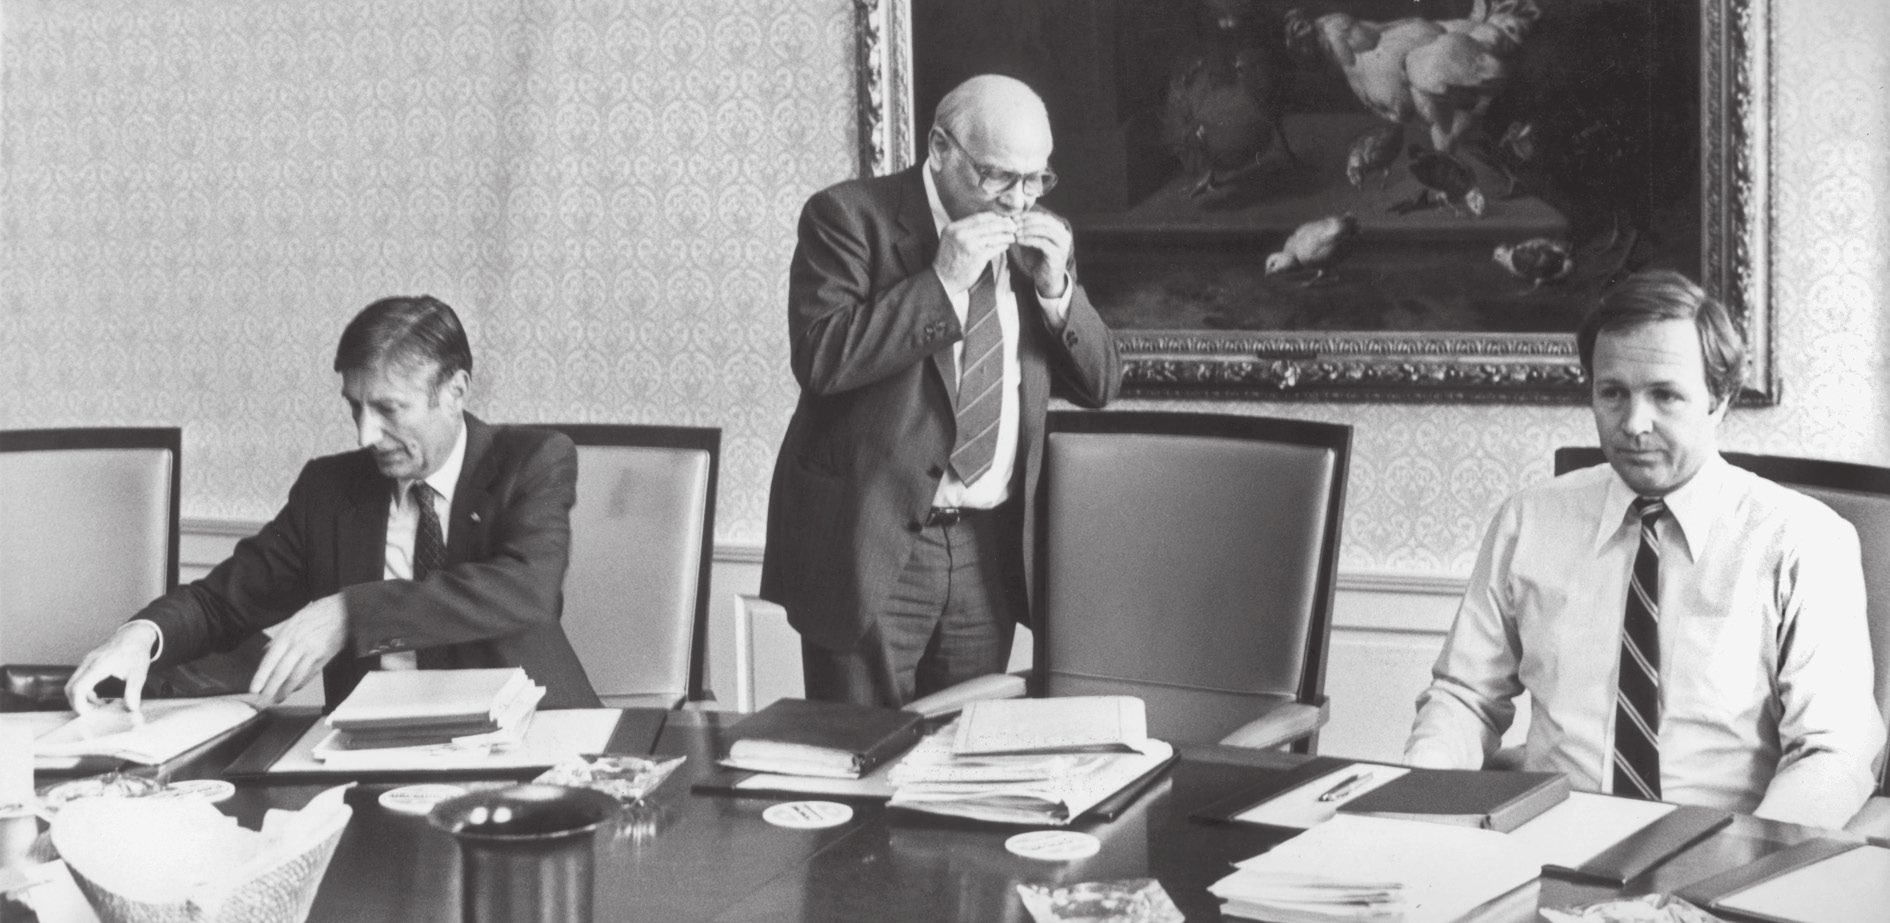 het perspectief van de onderhandelaars 147 De onderhandelaars Van Agt, Den Uyl en Terlouw, augustus 1981.